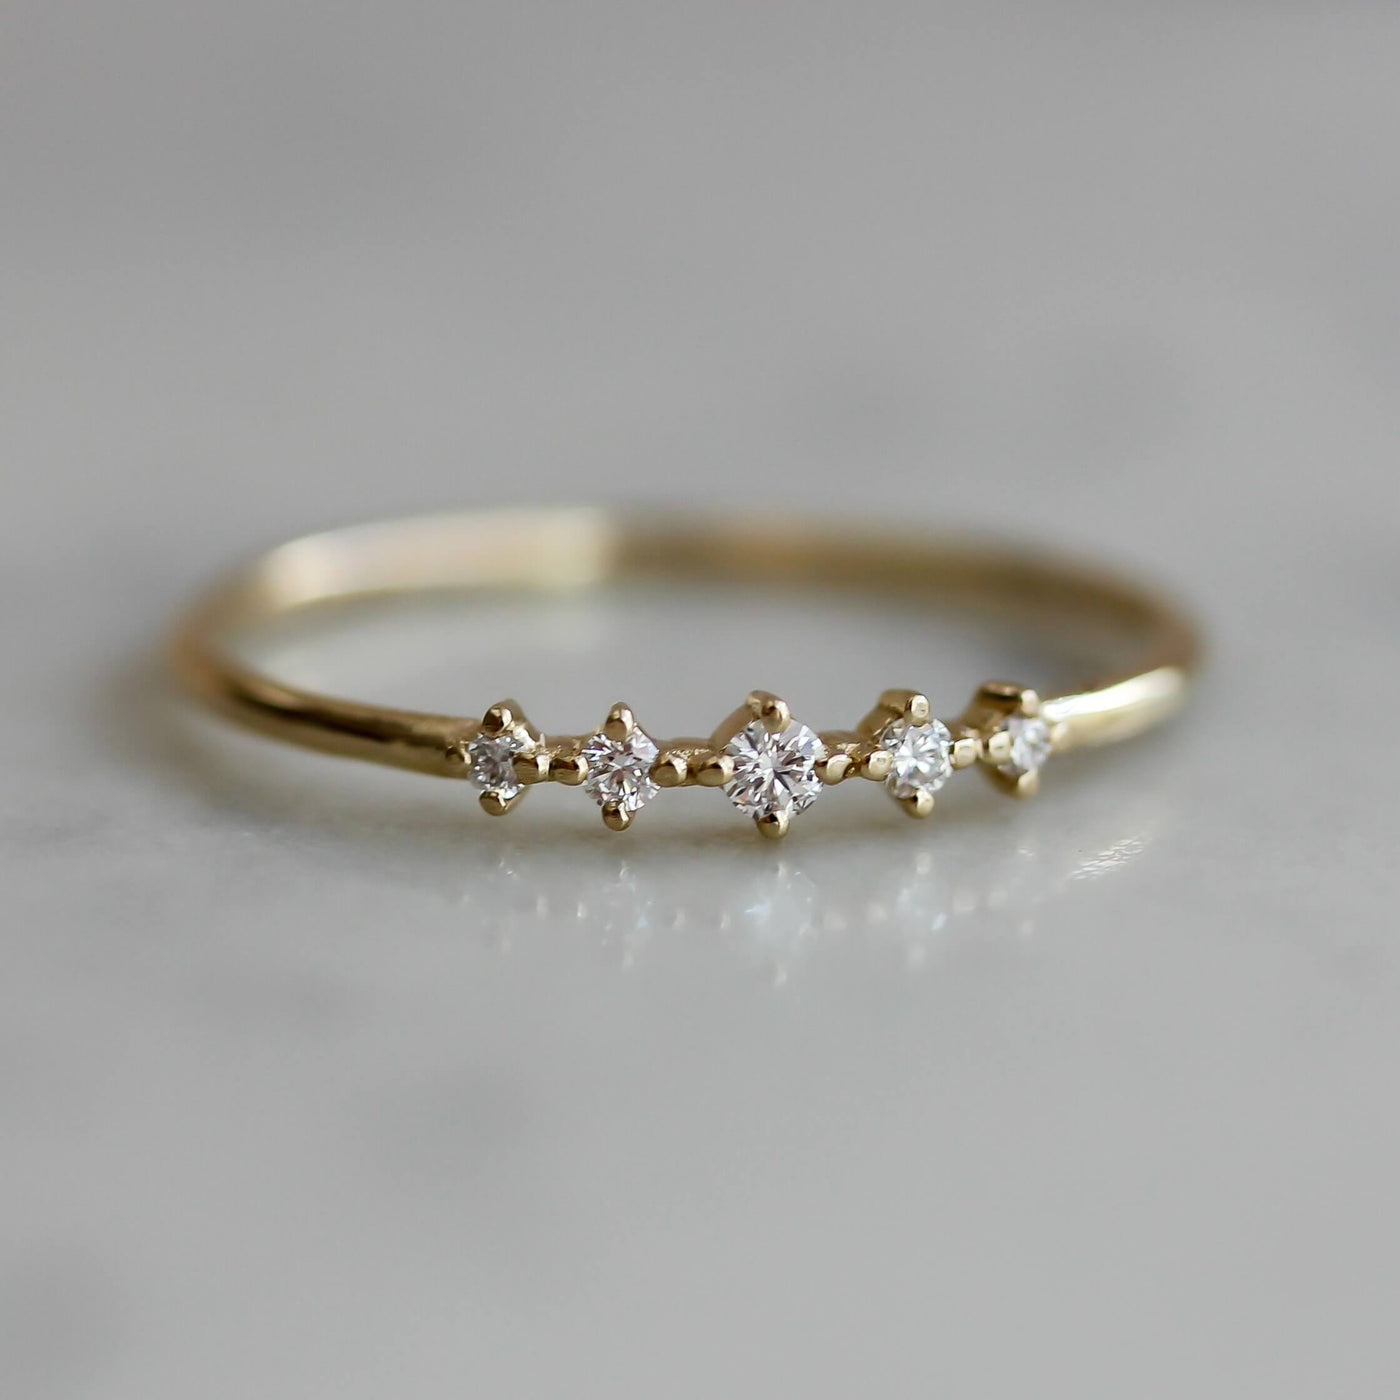 Isabel Ring 14K Gold White Diamonds Rings 